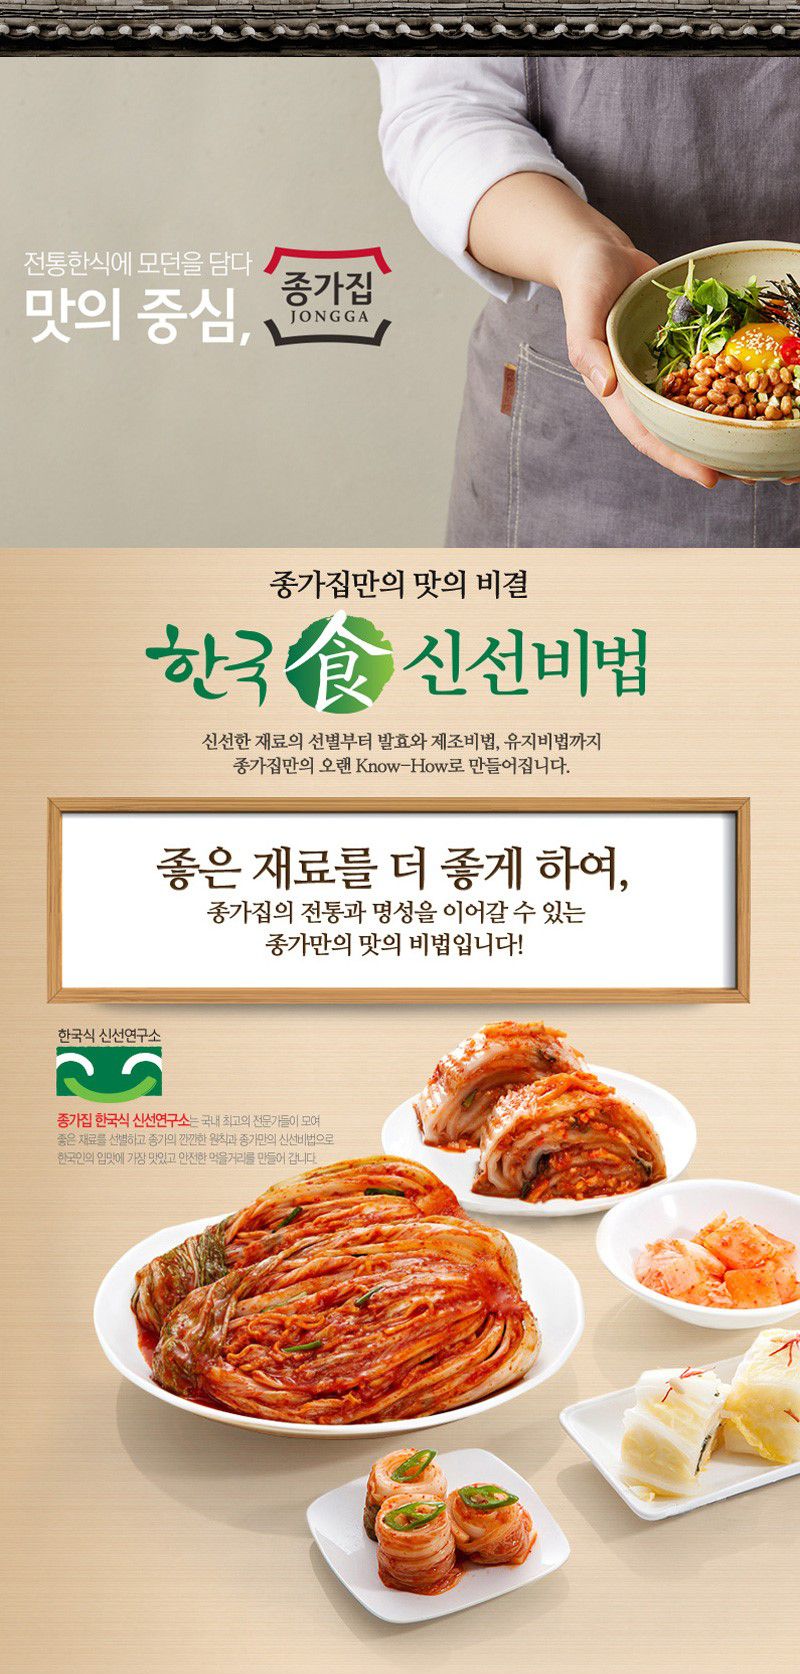 韓國食品-[宗家] 蘿蔔泡菜 500g